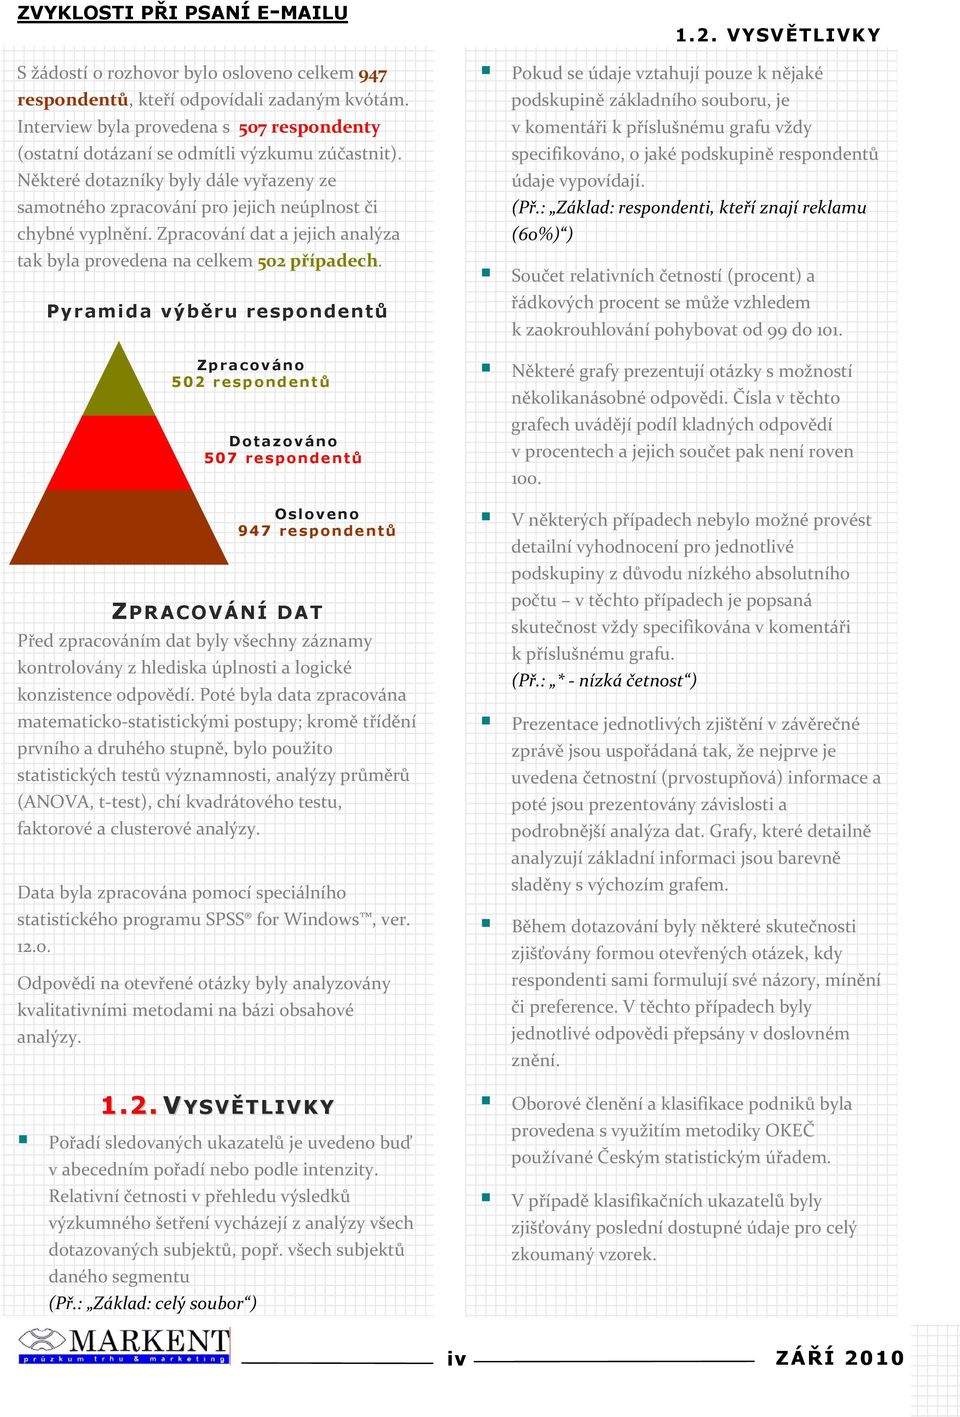 Pyramida výb$ru respondent# ZPRACOVÁNÍ DAT P&edzpracovánímdatbylyvšechnyzáznamy kontroloványzhlediskaúplnostialogické konzistenceodpov$dí.